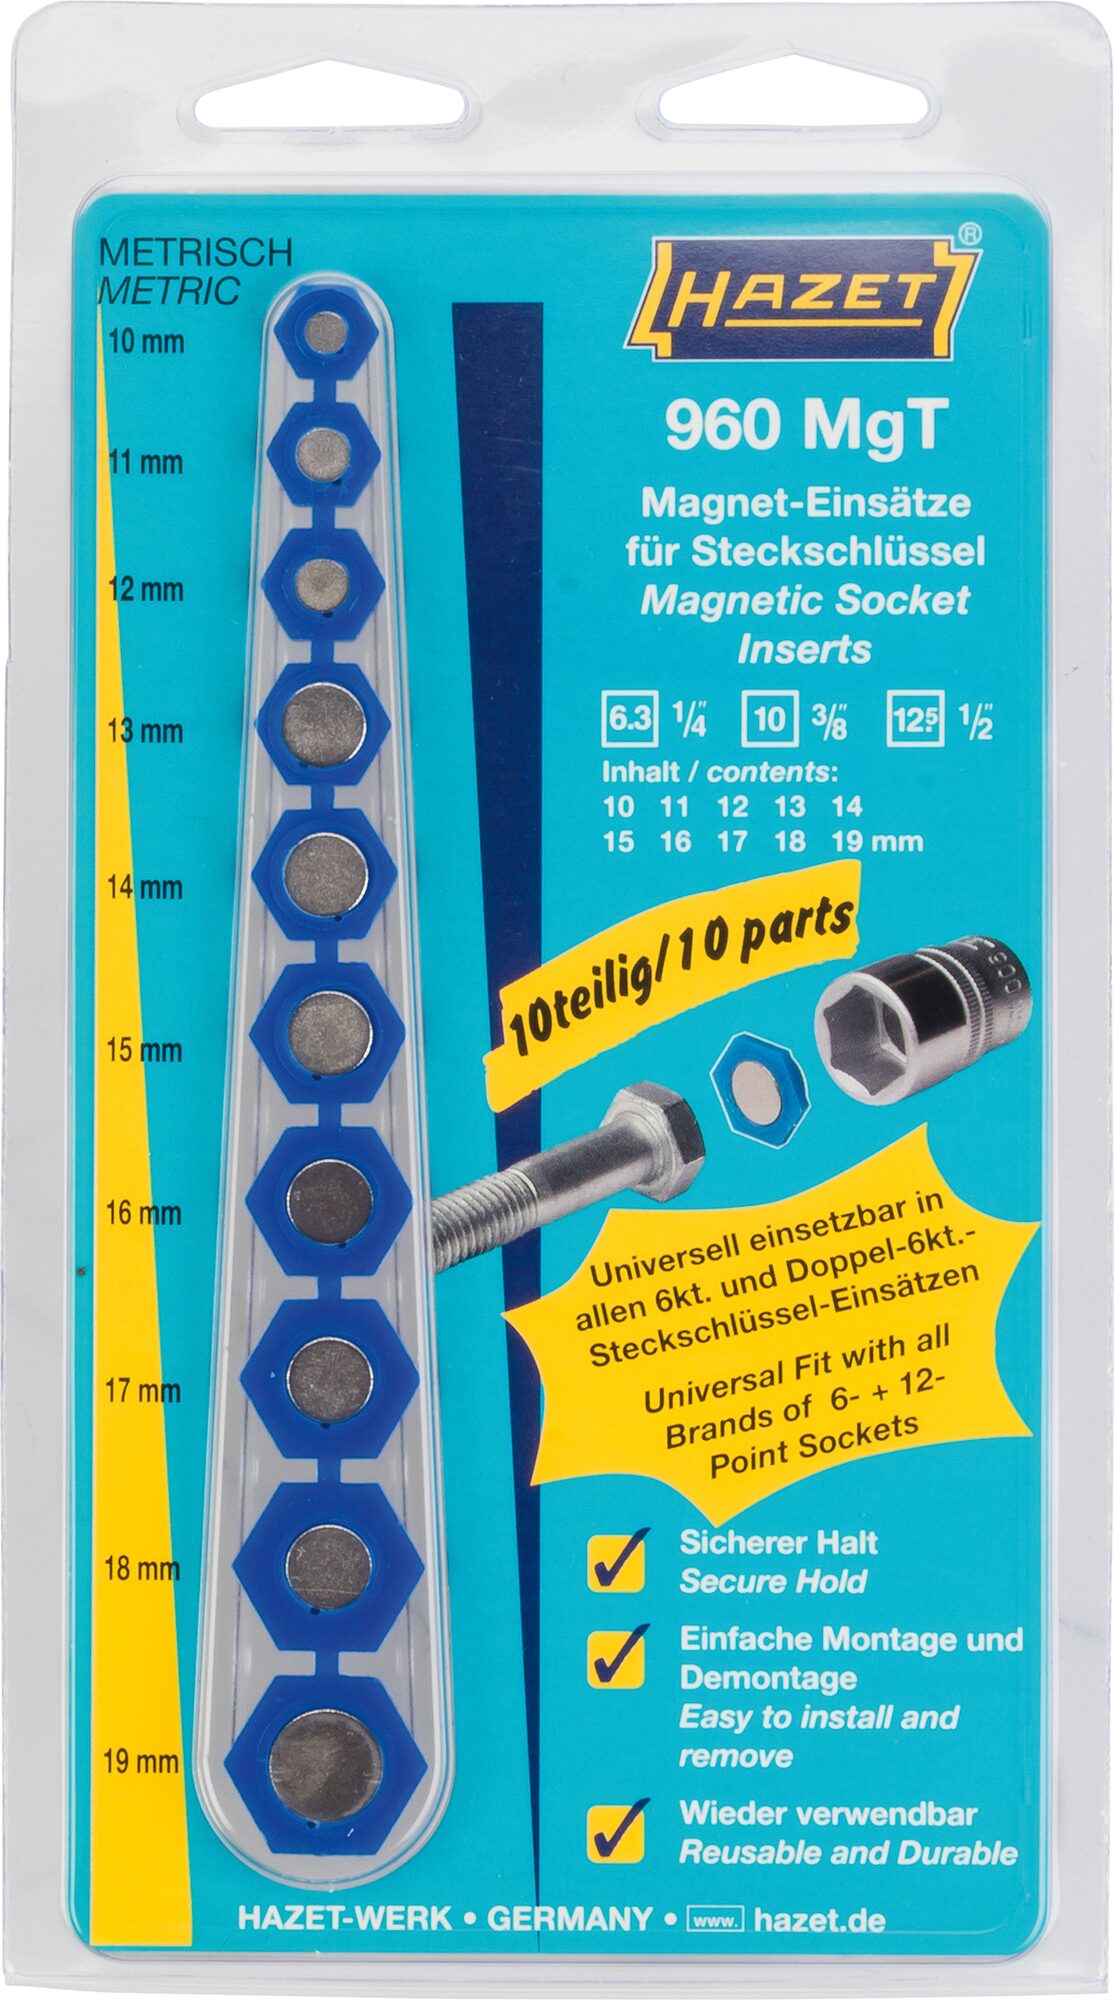 HAZET Magnet-Einsatz · für Steckschlüsseleinsätze 960MGT · Außen Sechskant Profil